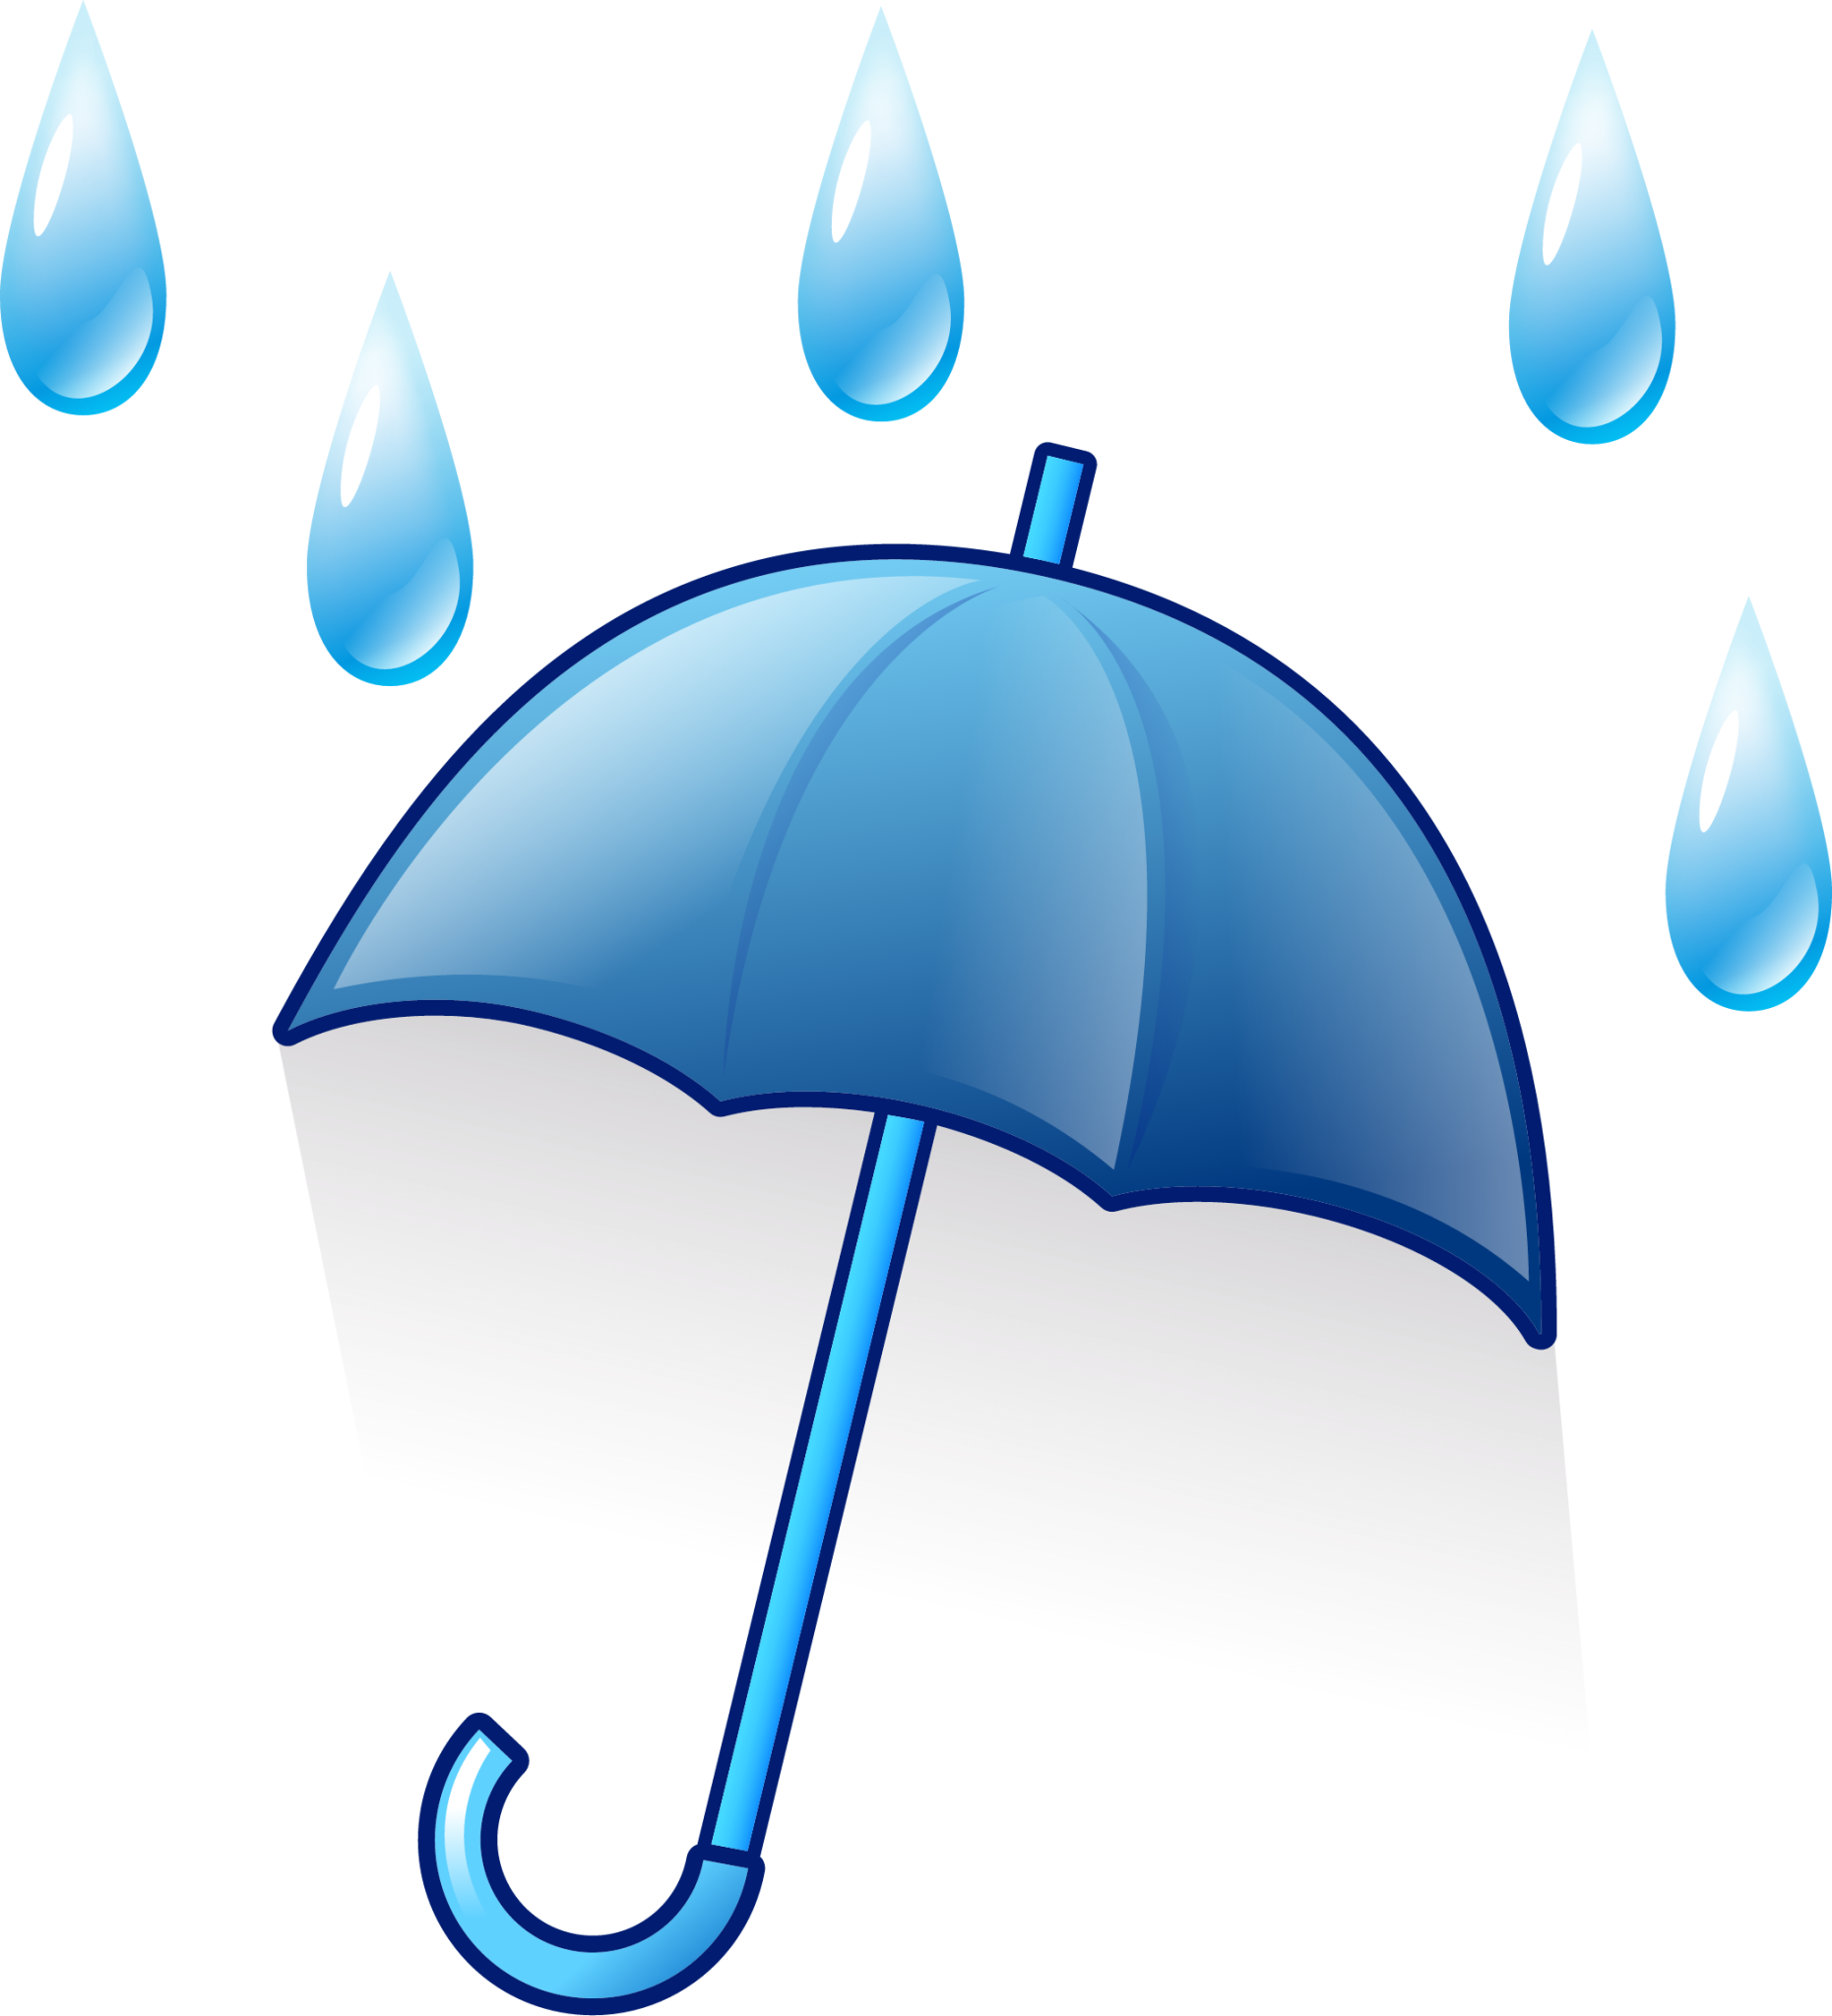 umbrella with rain drops